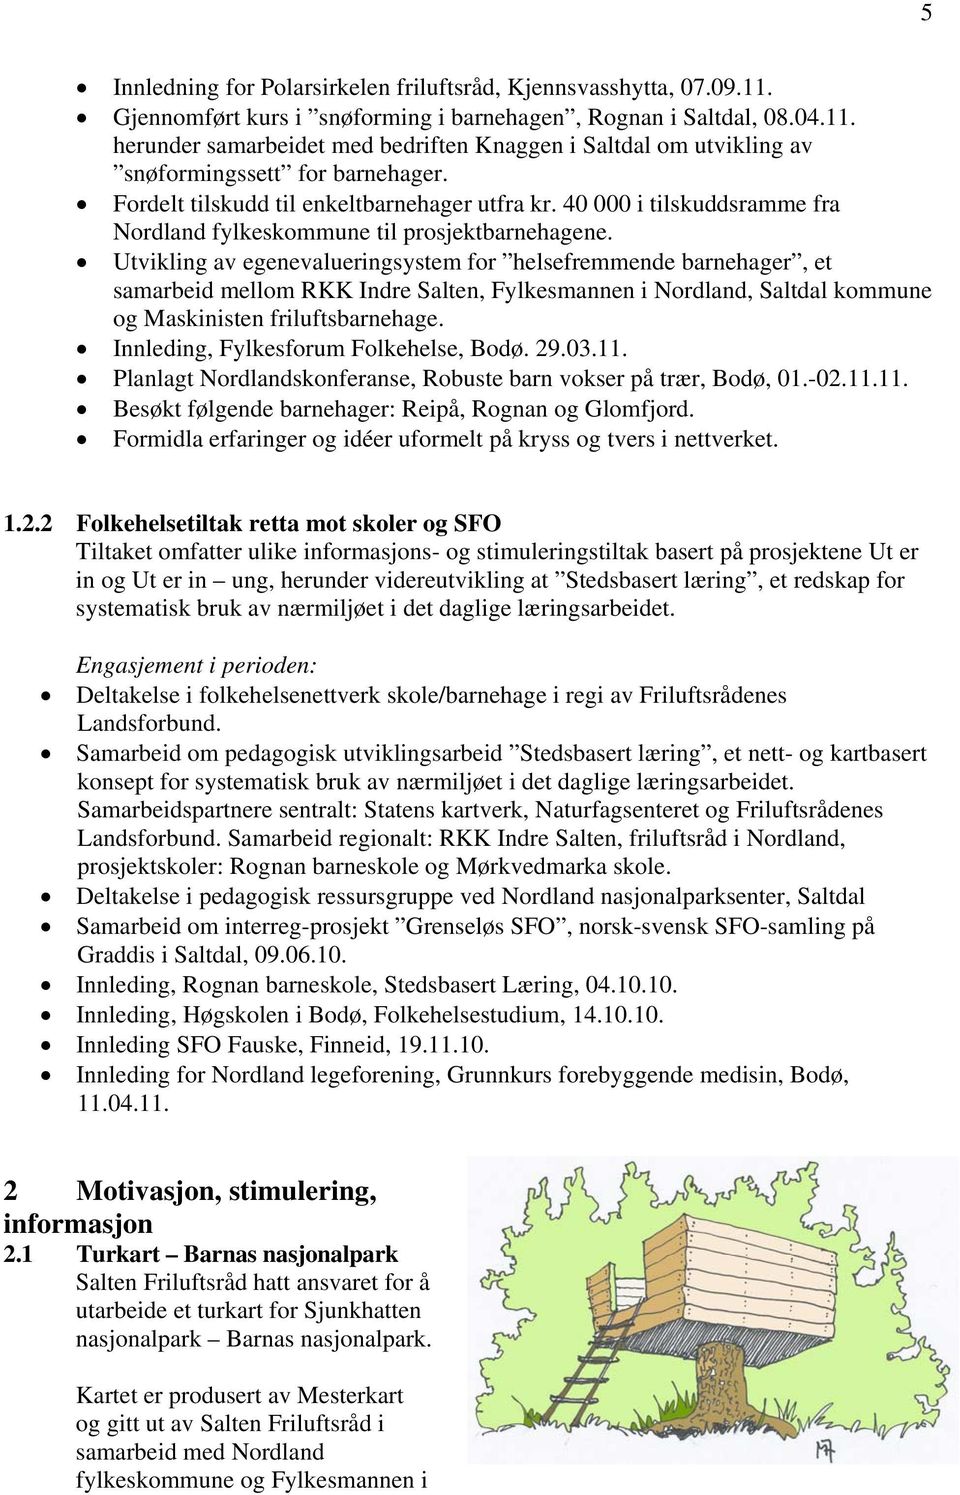 Utvikling av egenevalueringsystem for helsefremmende barnehager, et samarbeid mellom RKK Indre Salten, Fylkesmannen i Nordland, Saltdal kommune og Maskinisten friluftsbarnehage.